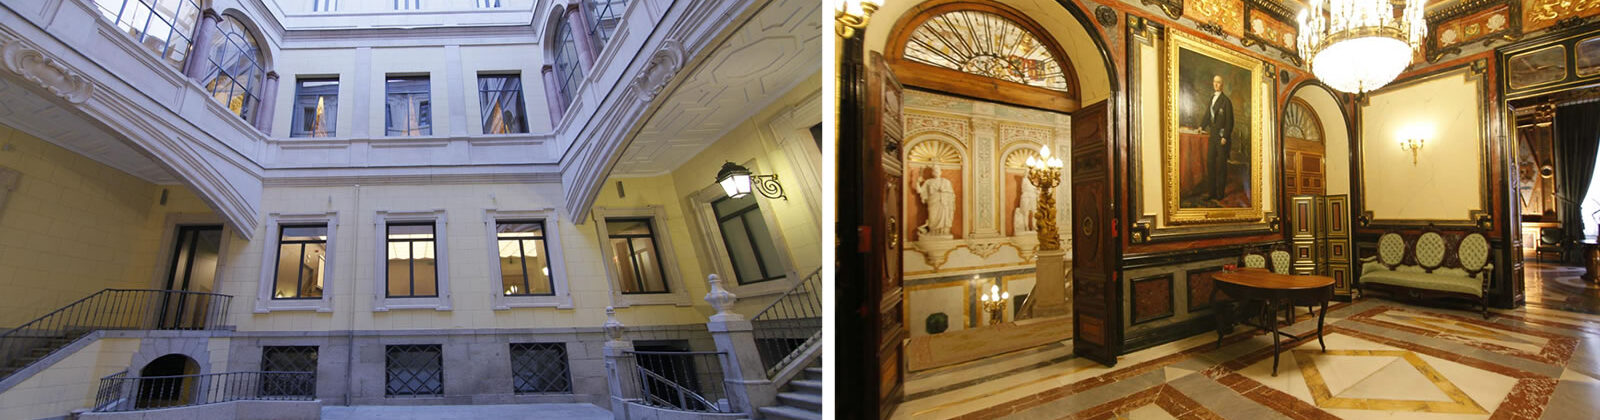 Vistas del interior del Palacio de Santoña, patio interior y hall superior.